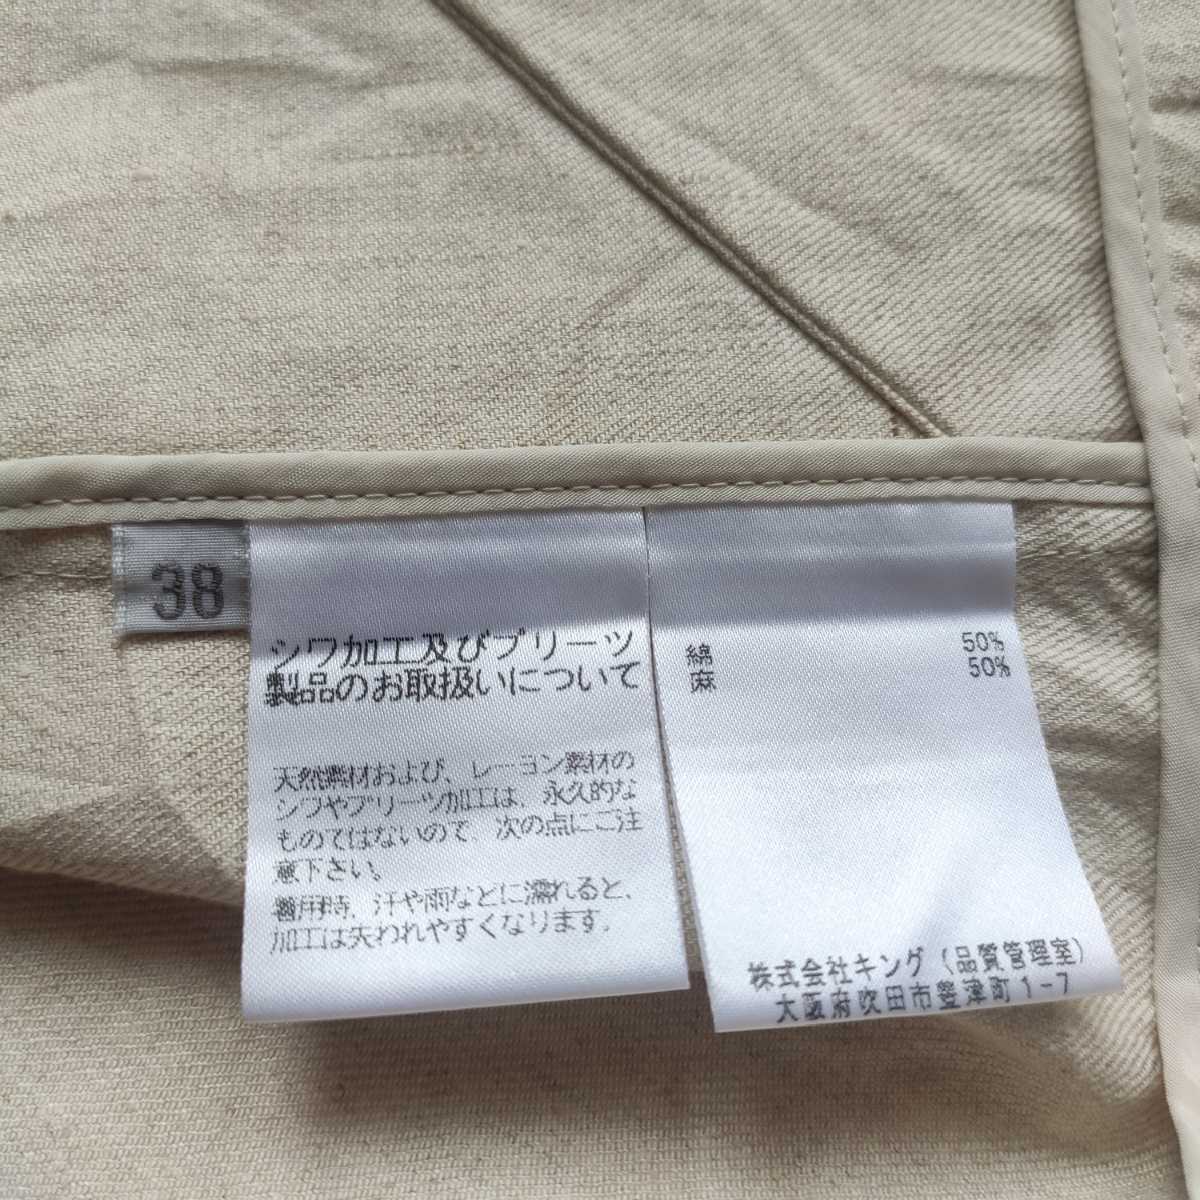 116円 新商品!新型 サンケーキコム 高知和紙 和柄の袋 小梅 薄紫 5枚入 170×250mm KJP-14